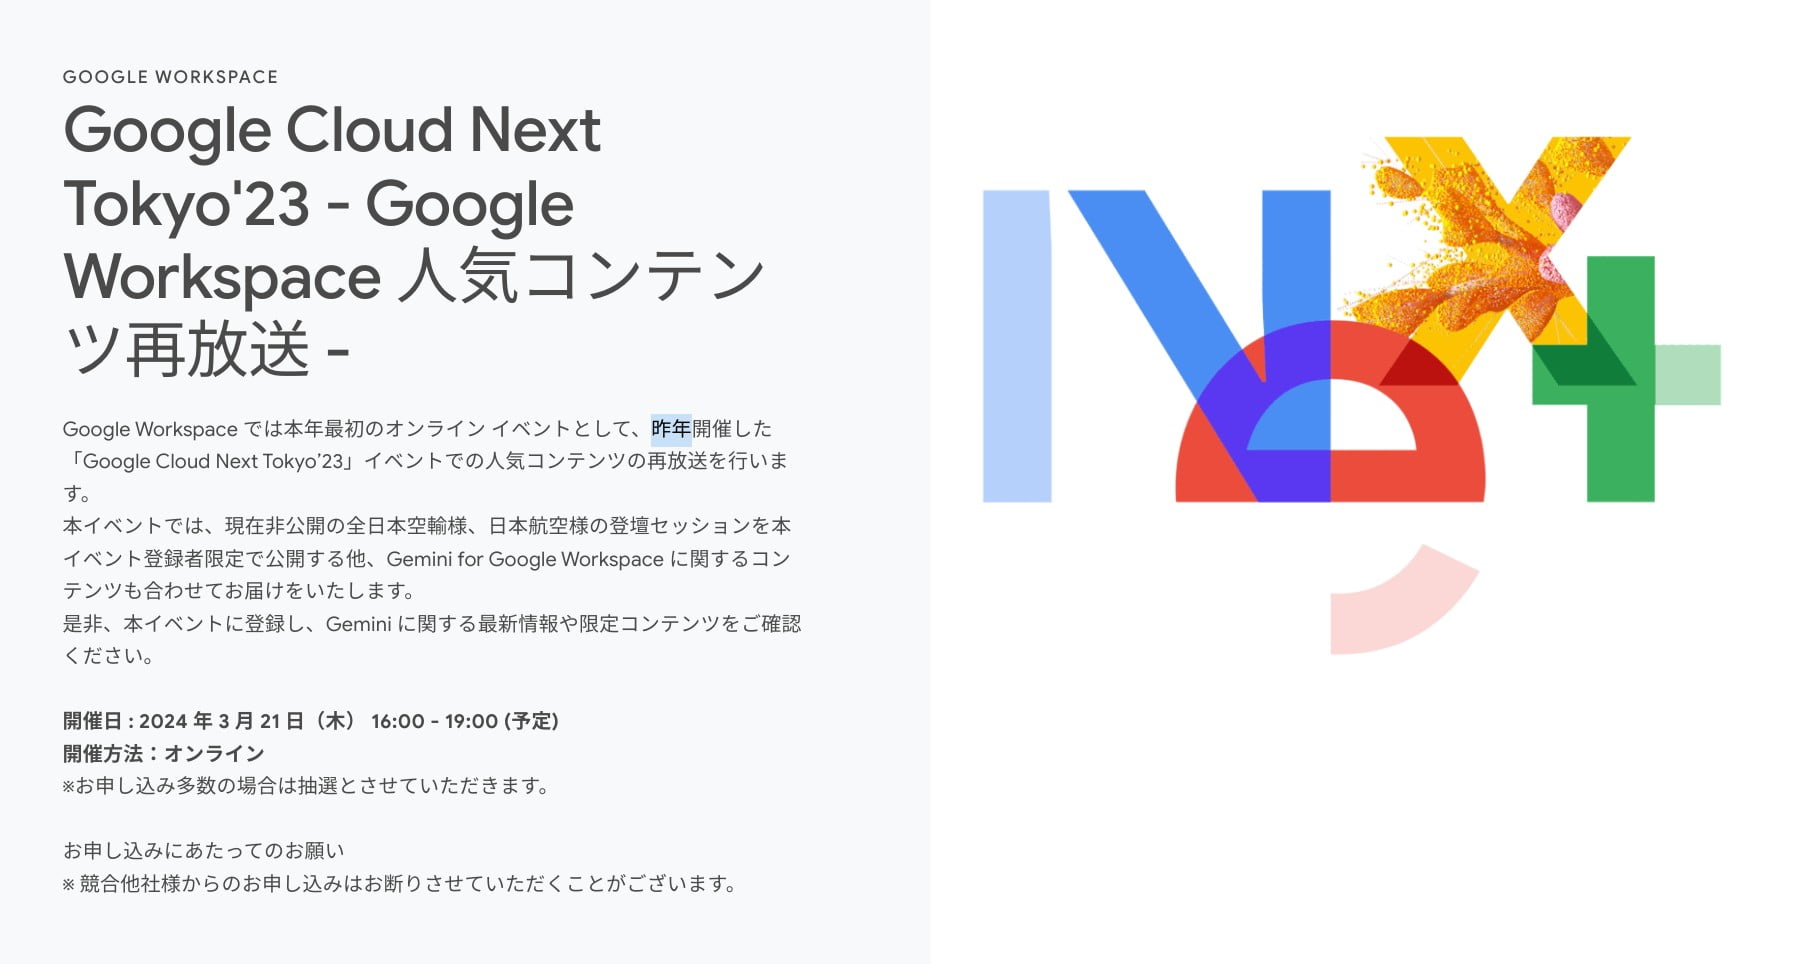 [Google Cloud] Google Cloud Next Tokyo'23 - Google Workspace 人気コンテンツ再放送 -